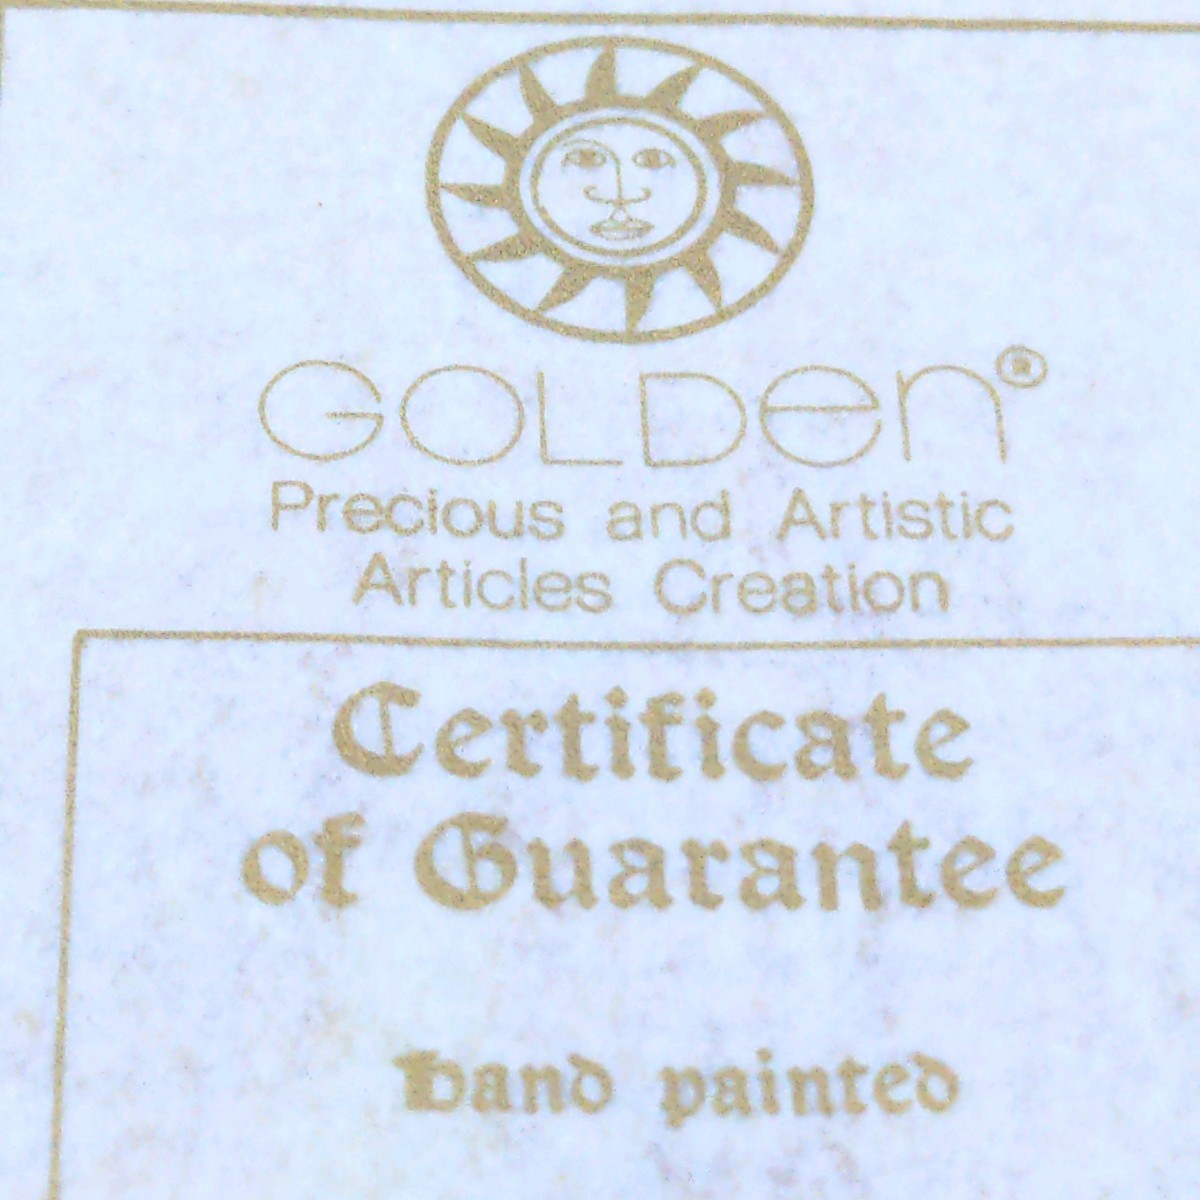 イタリア製 額絵 GOLDEN Precious and Artistic Articles Creation Certificate of Guaranteeband paintedon 925/1000 Silver シルバー925_画像10